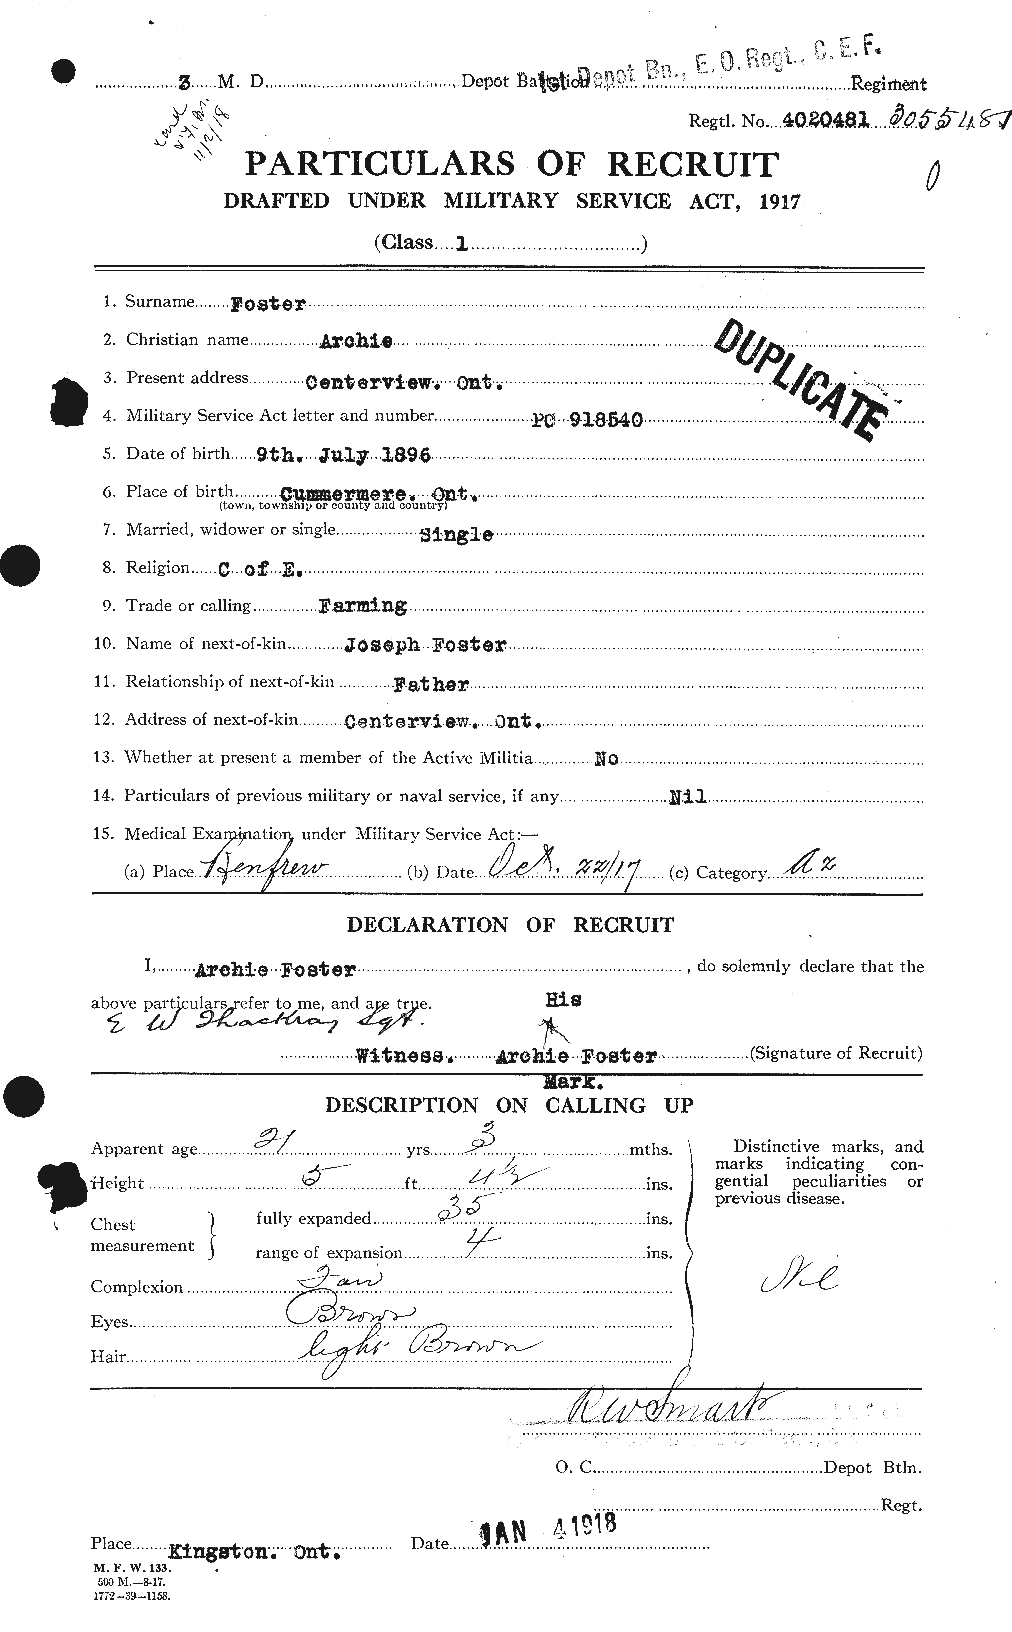 Dossiers du Personnel de la Première Guerre mondiale - CEC 330462a